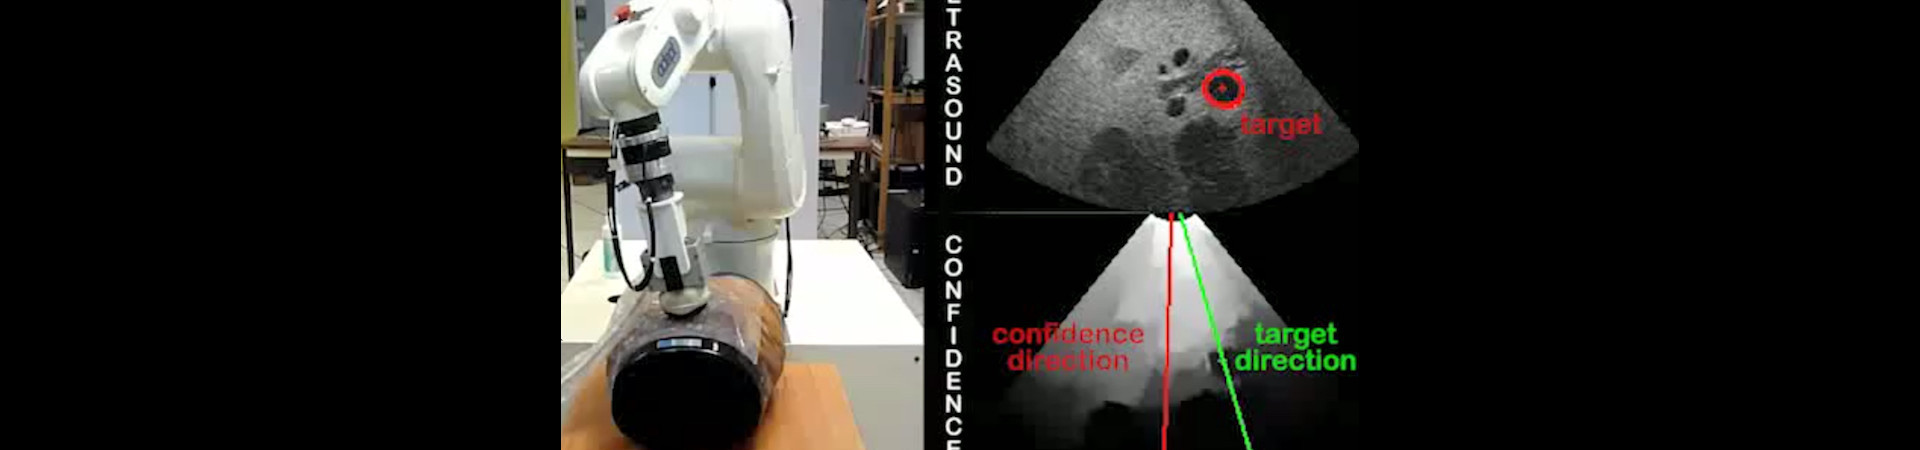 Automatic ultrasound image quality optimisation using confidence map